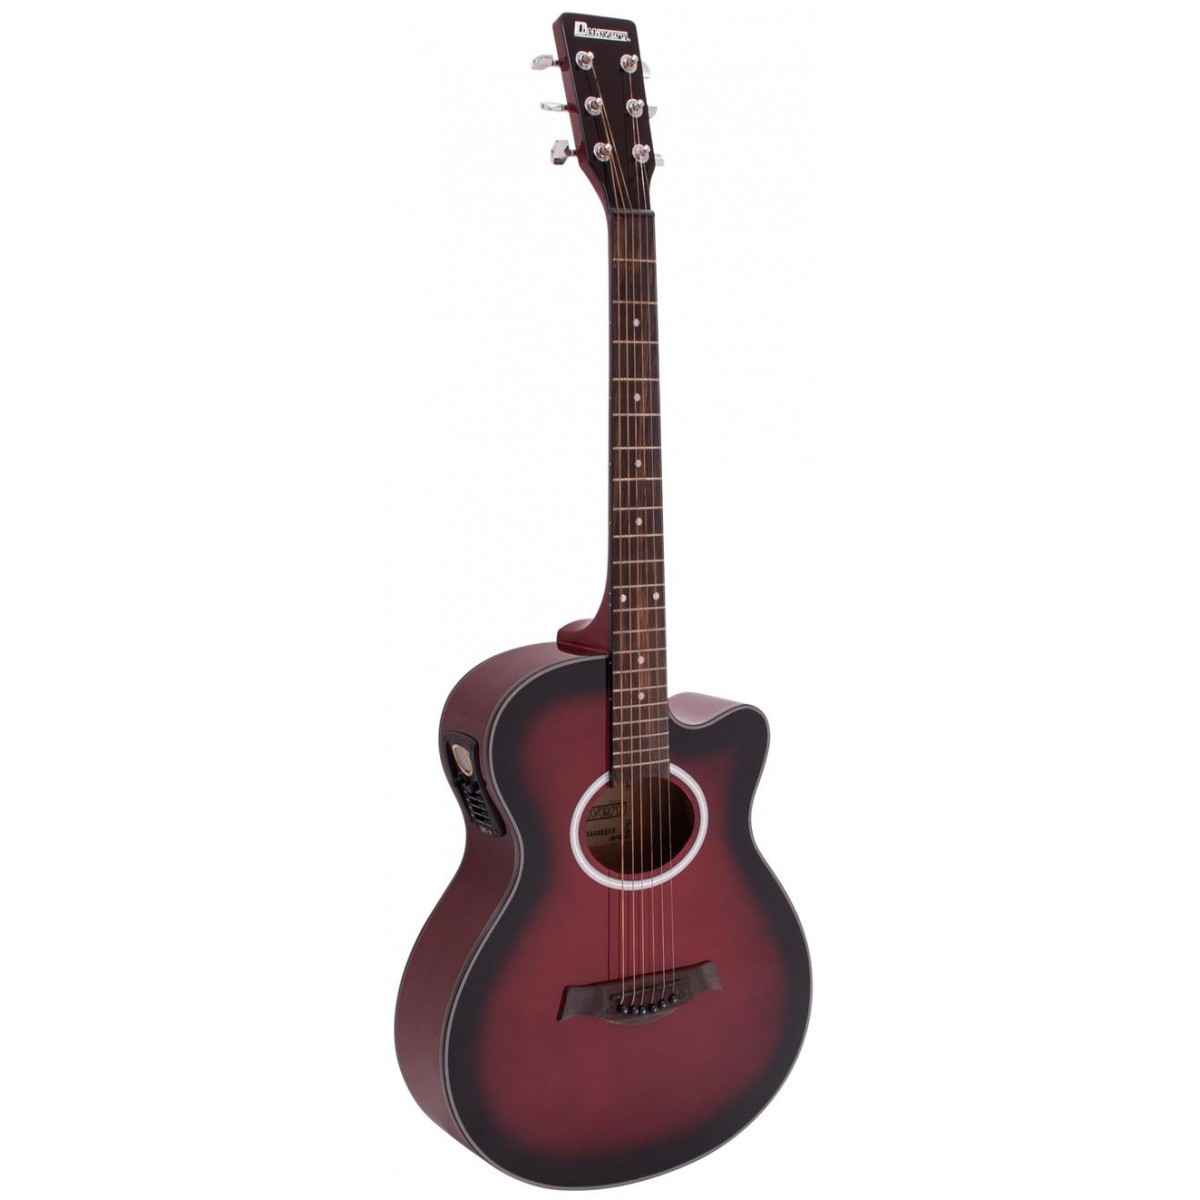 Fotografie Dimavery AW-400, elektroakustická kytara typu Folk, červená stínovaná